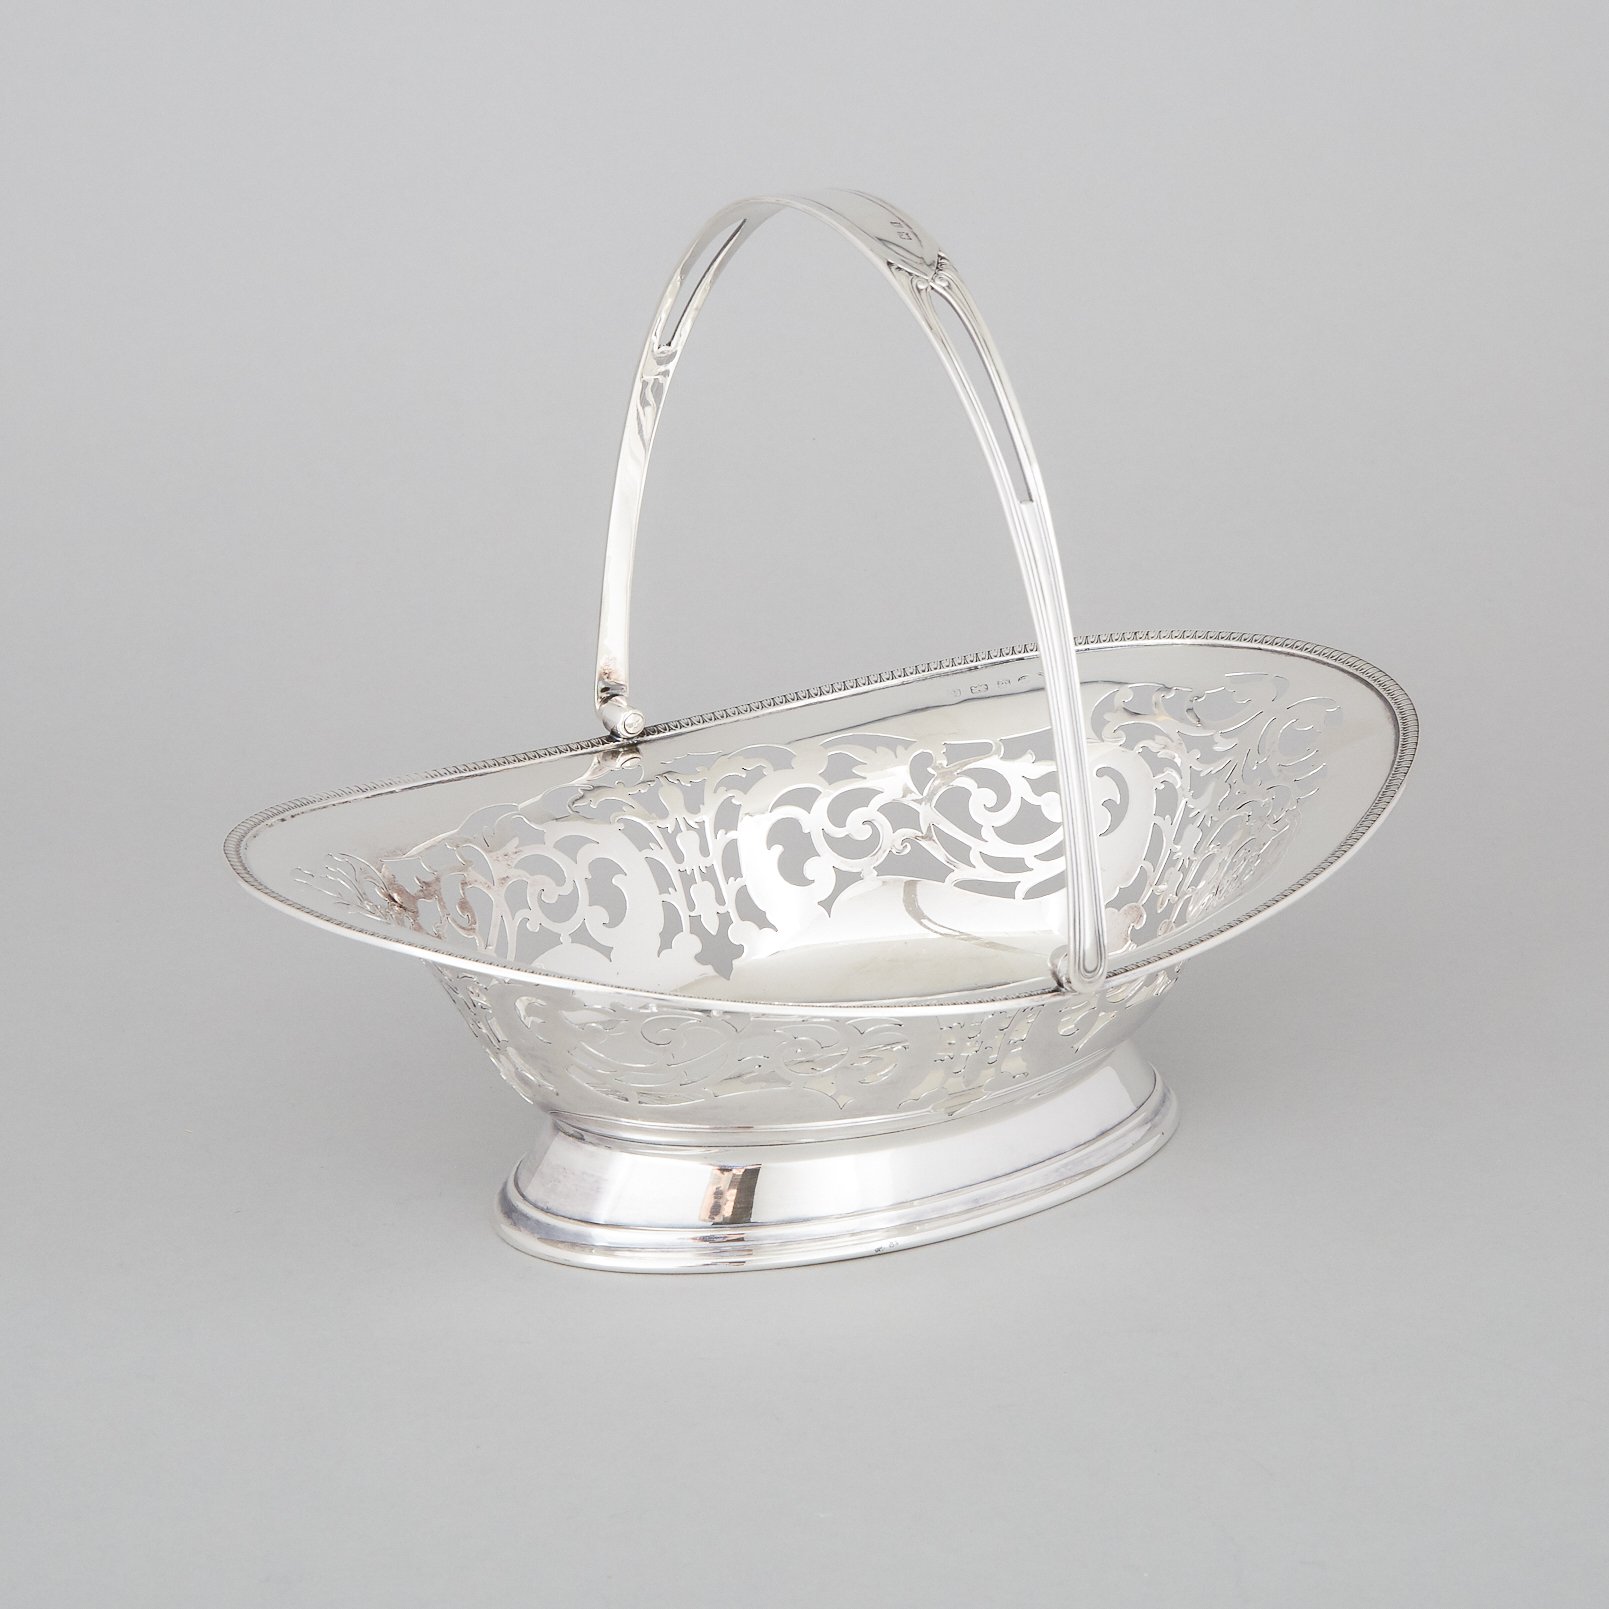 English Silver Pierced Oval Cake Basket, William Suckling Ltd., Birmingham, 1925